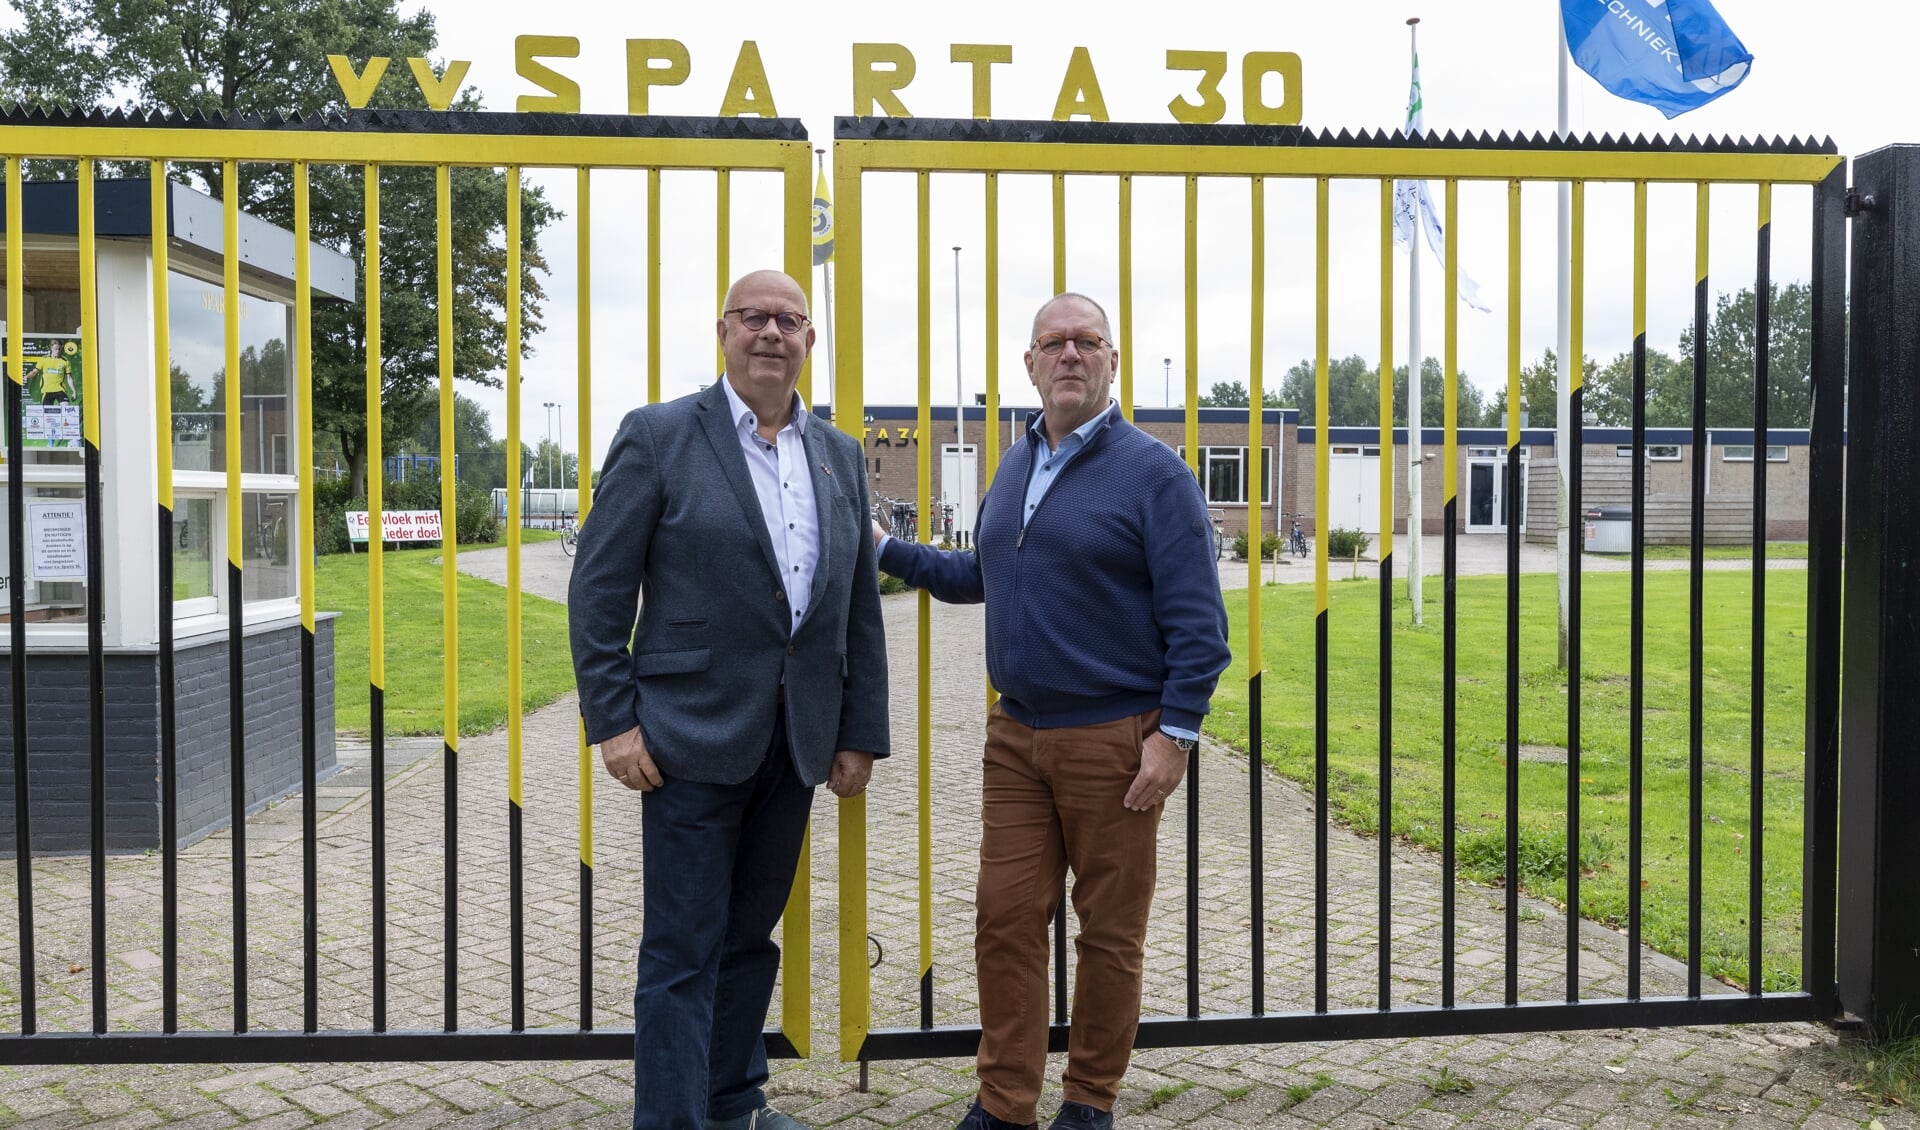 • Kees van der Linden en Frans Sterrenburg, de twee voorzitters van Sparta'30.